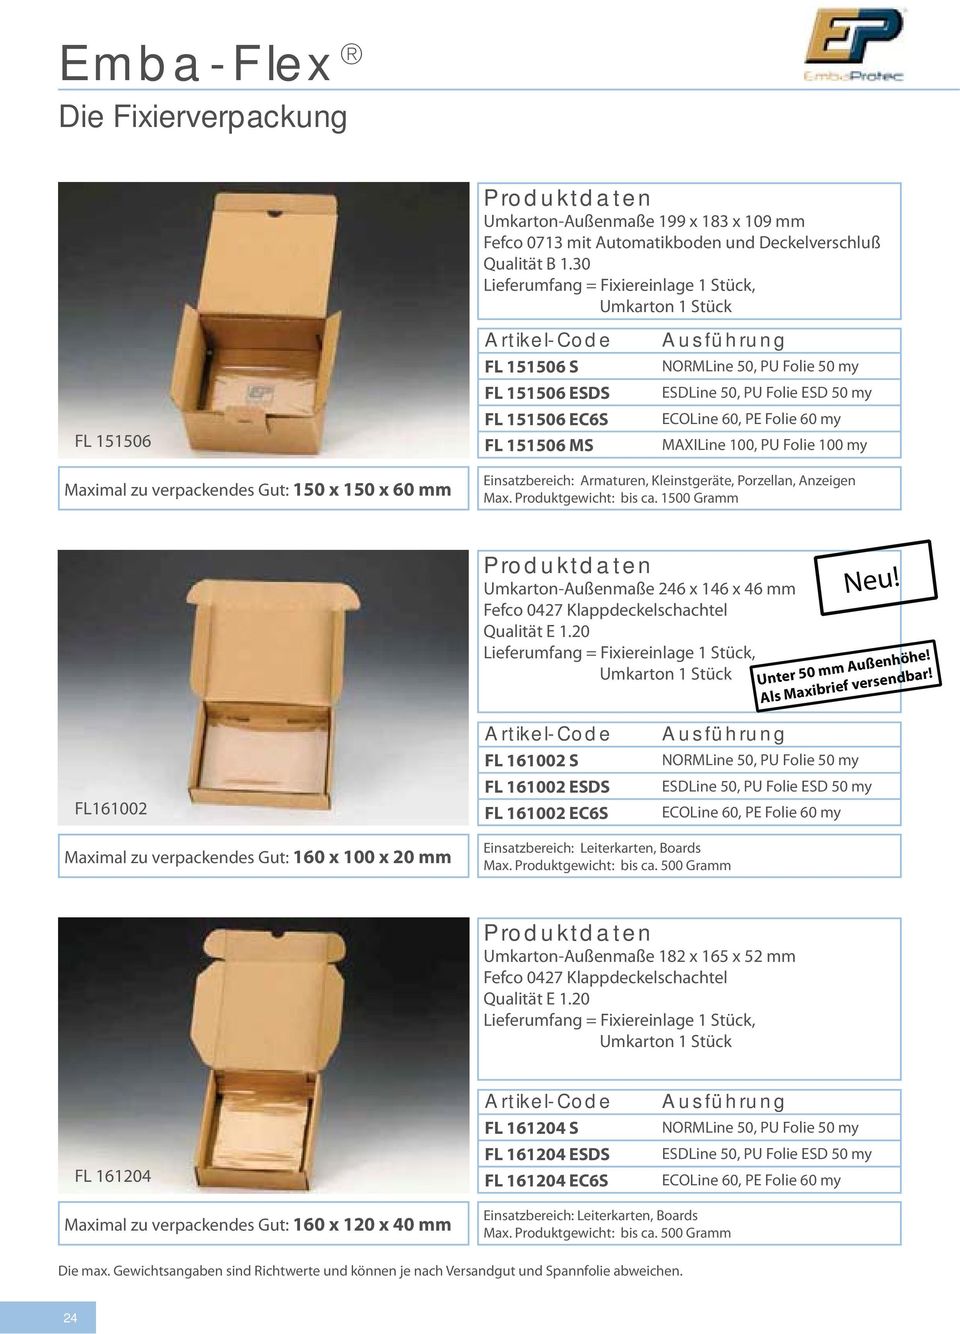 FL161002 FL 161002 S FL 161002 ESDS FL 161002 EC6S Maximal zu verpackendes Gut: 160 x 100 x 20 mm Einsatzbereich: Leiterkarten, Boards Max. Produktgewicht: bis ca.